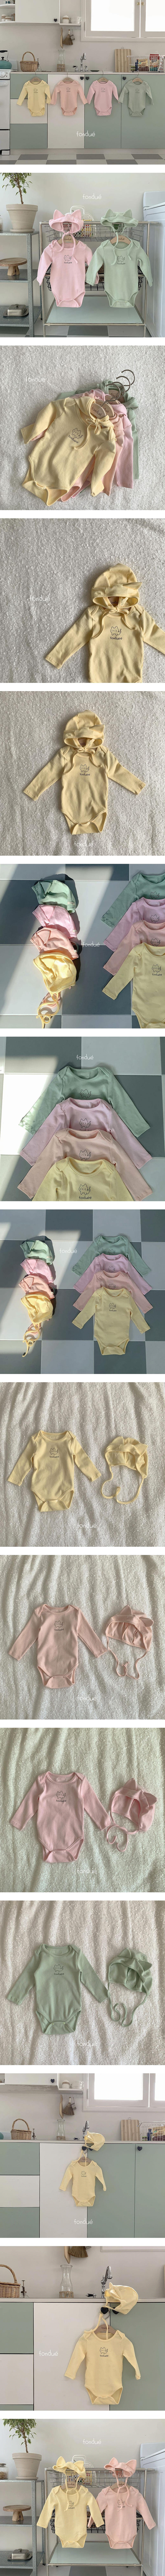 Fondue - Korean Baby Fashion - #babyootd - Nyang Nyang Bonnet Set - 6